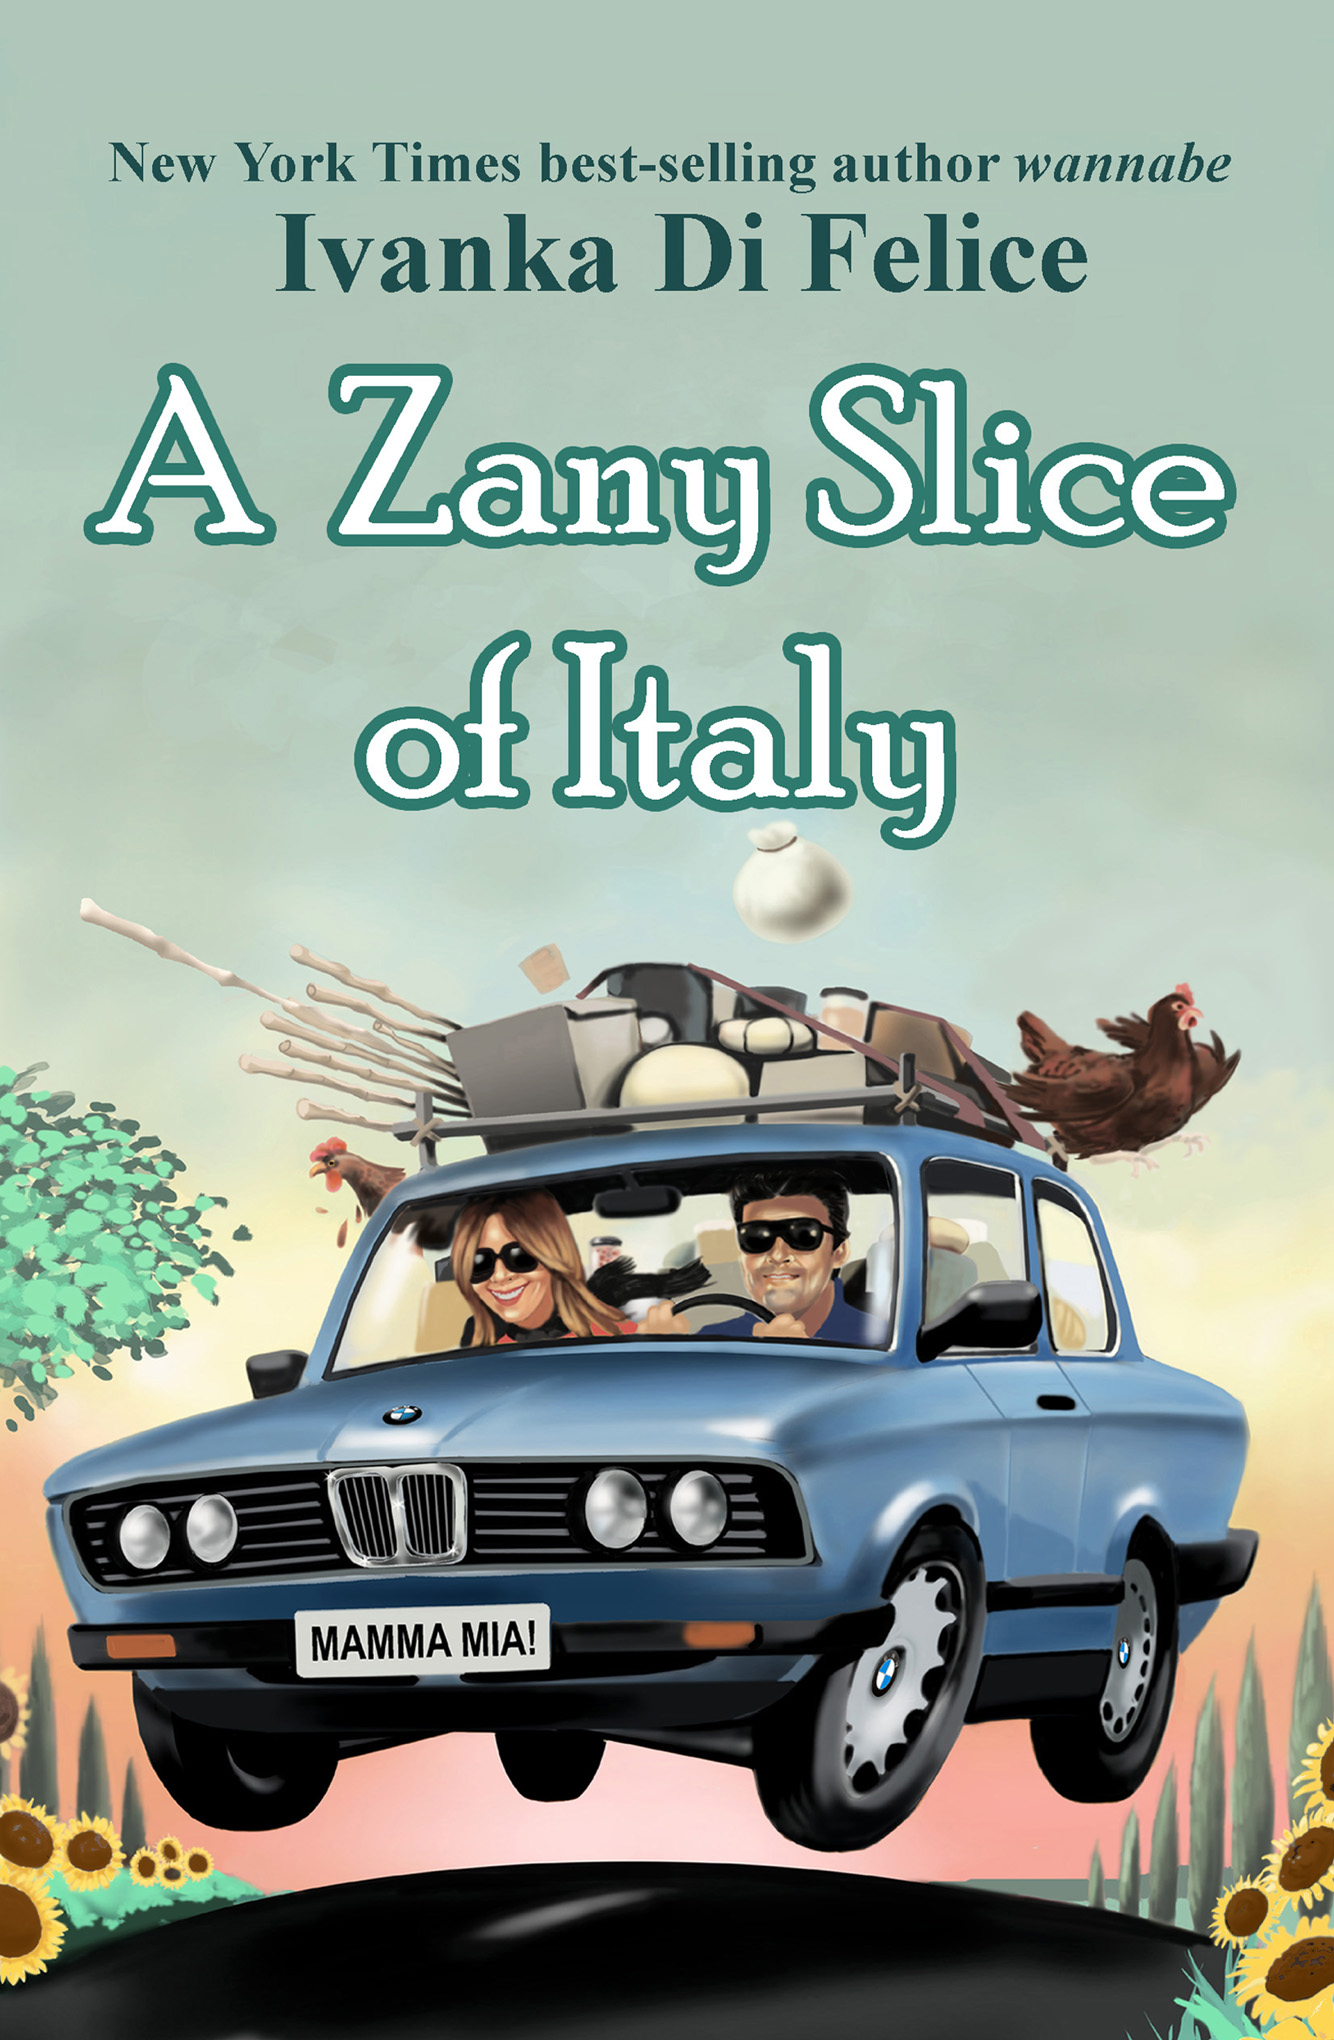 A Zany Slice of Italy by Ivanka Di Felice